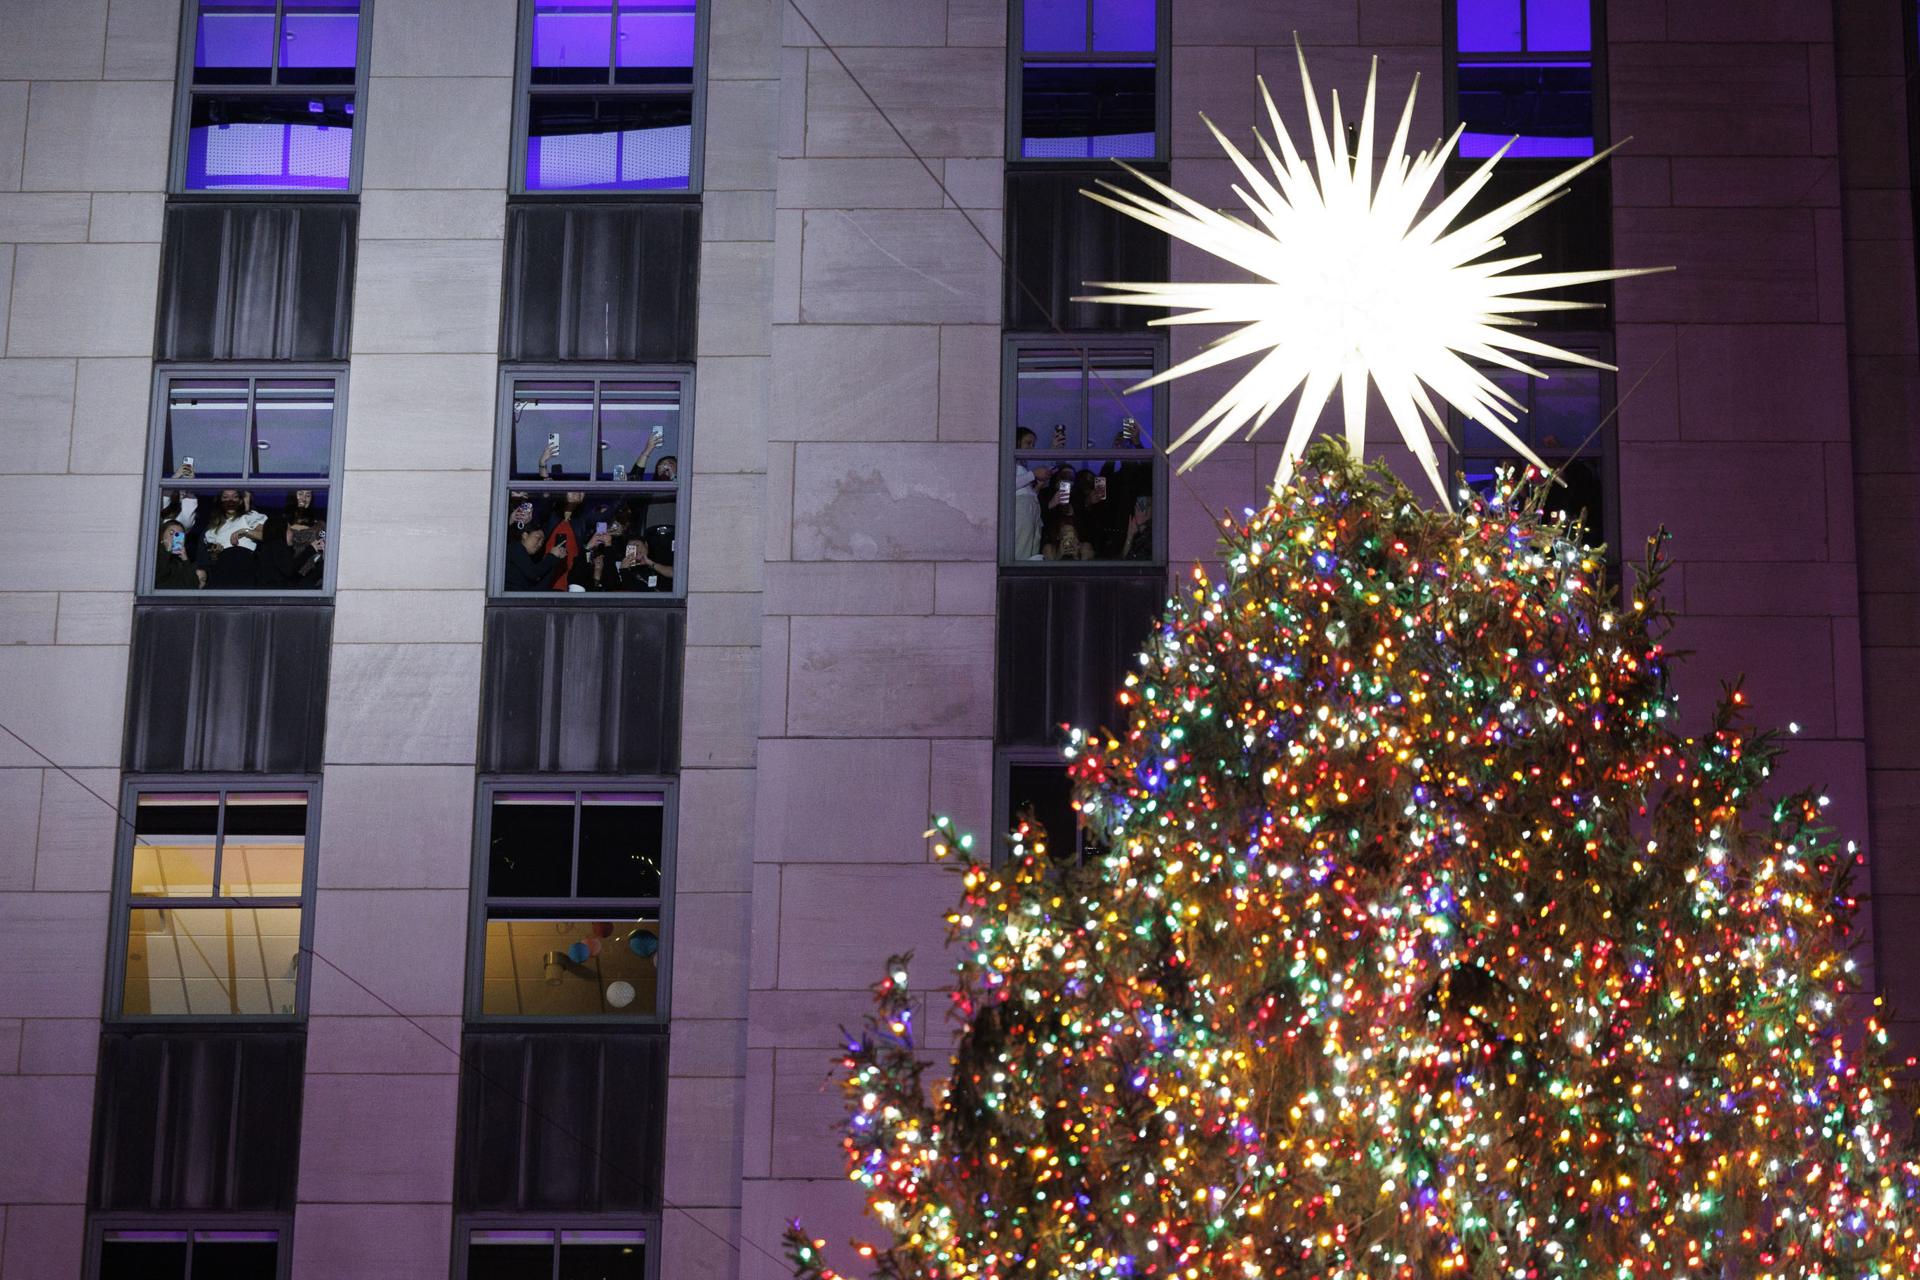 El árbol de Navidad de Rockefeller se enciende por primera vez esta temporada durante la 91ª ceremonia de encendido en Nueva York. Foto: fuente externa.